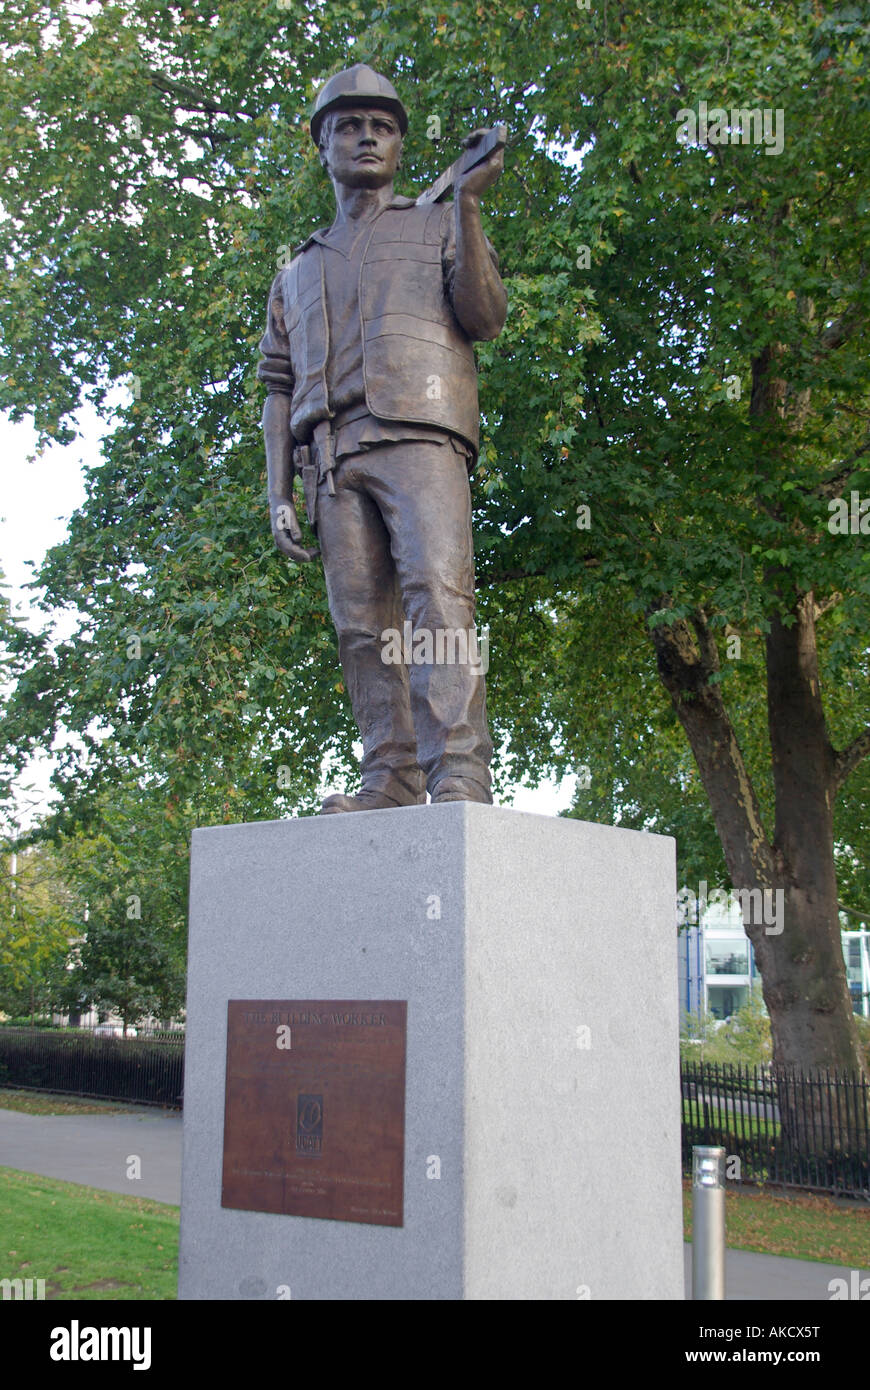 El edificio trabajador estatua conmemorando la vida de los trabajadores que han fallecido en los sitios de construcción de Tower Hill, Londres, Gran Bretaña la escultura por Alan Wilson Foto de stock